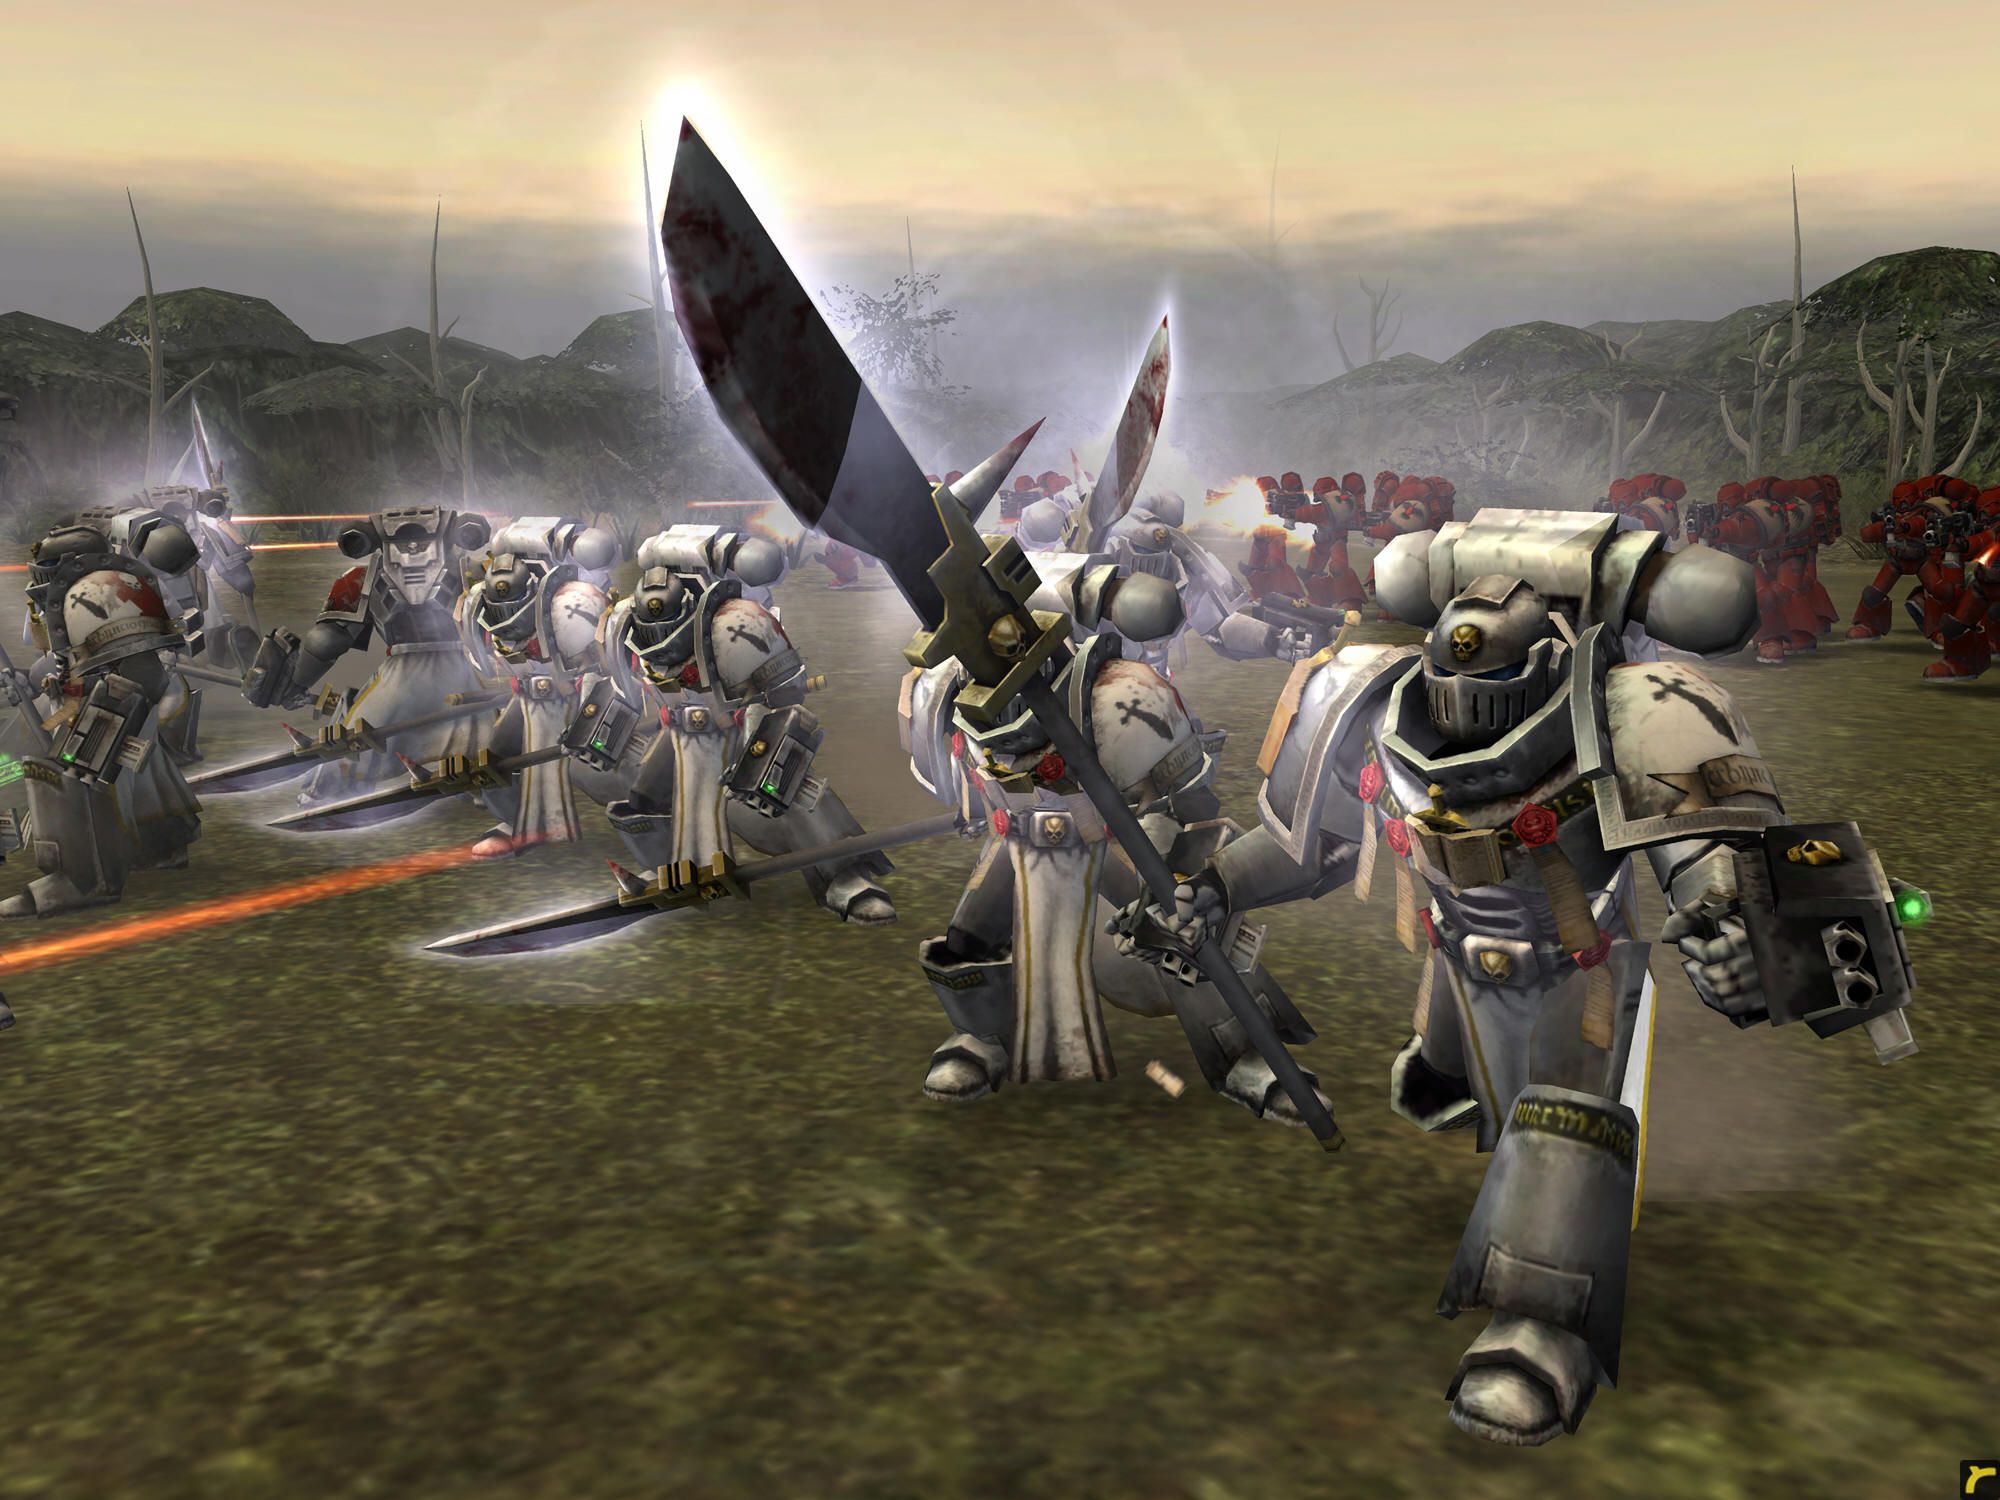 Grey Knights in battle during Warhammer 40k's Dawn of War.